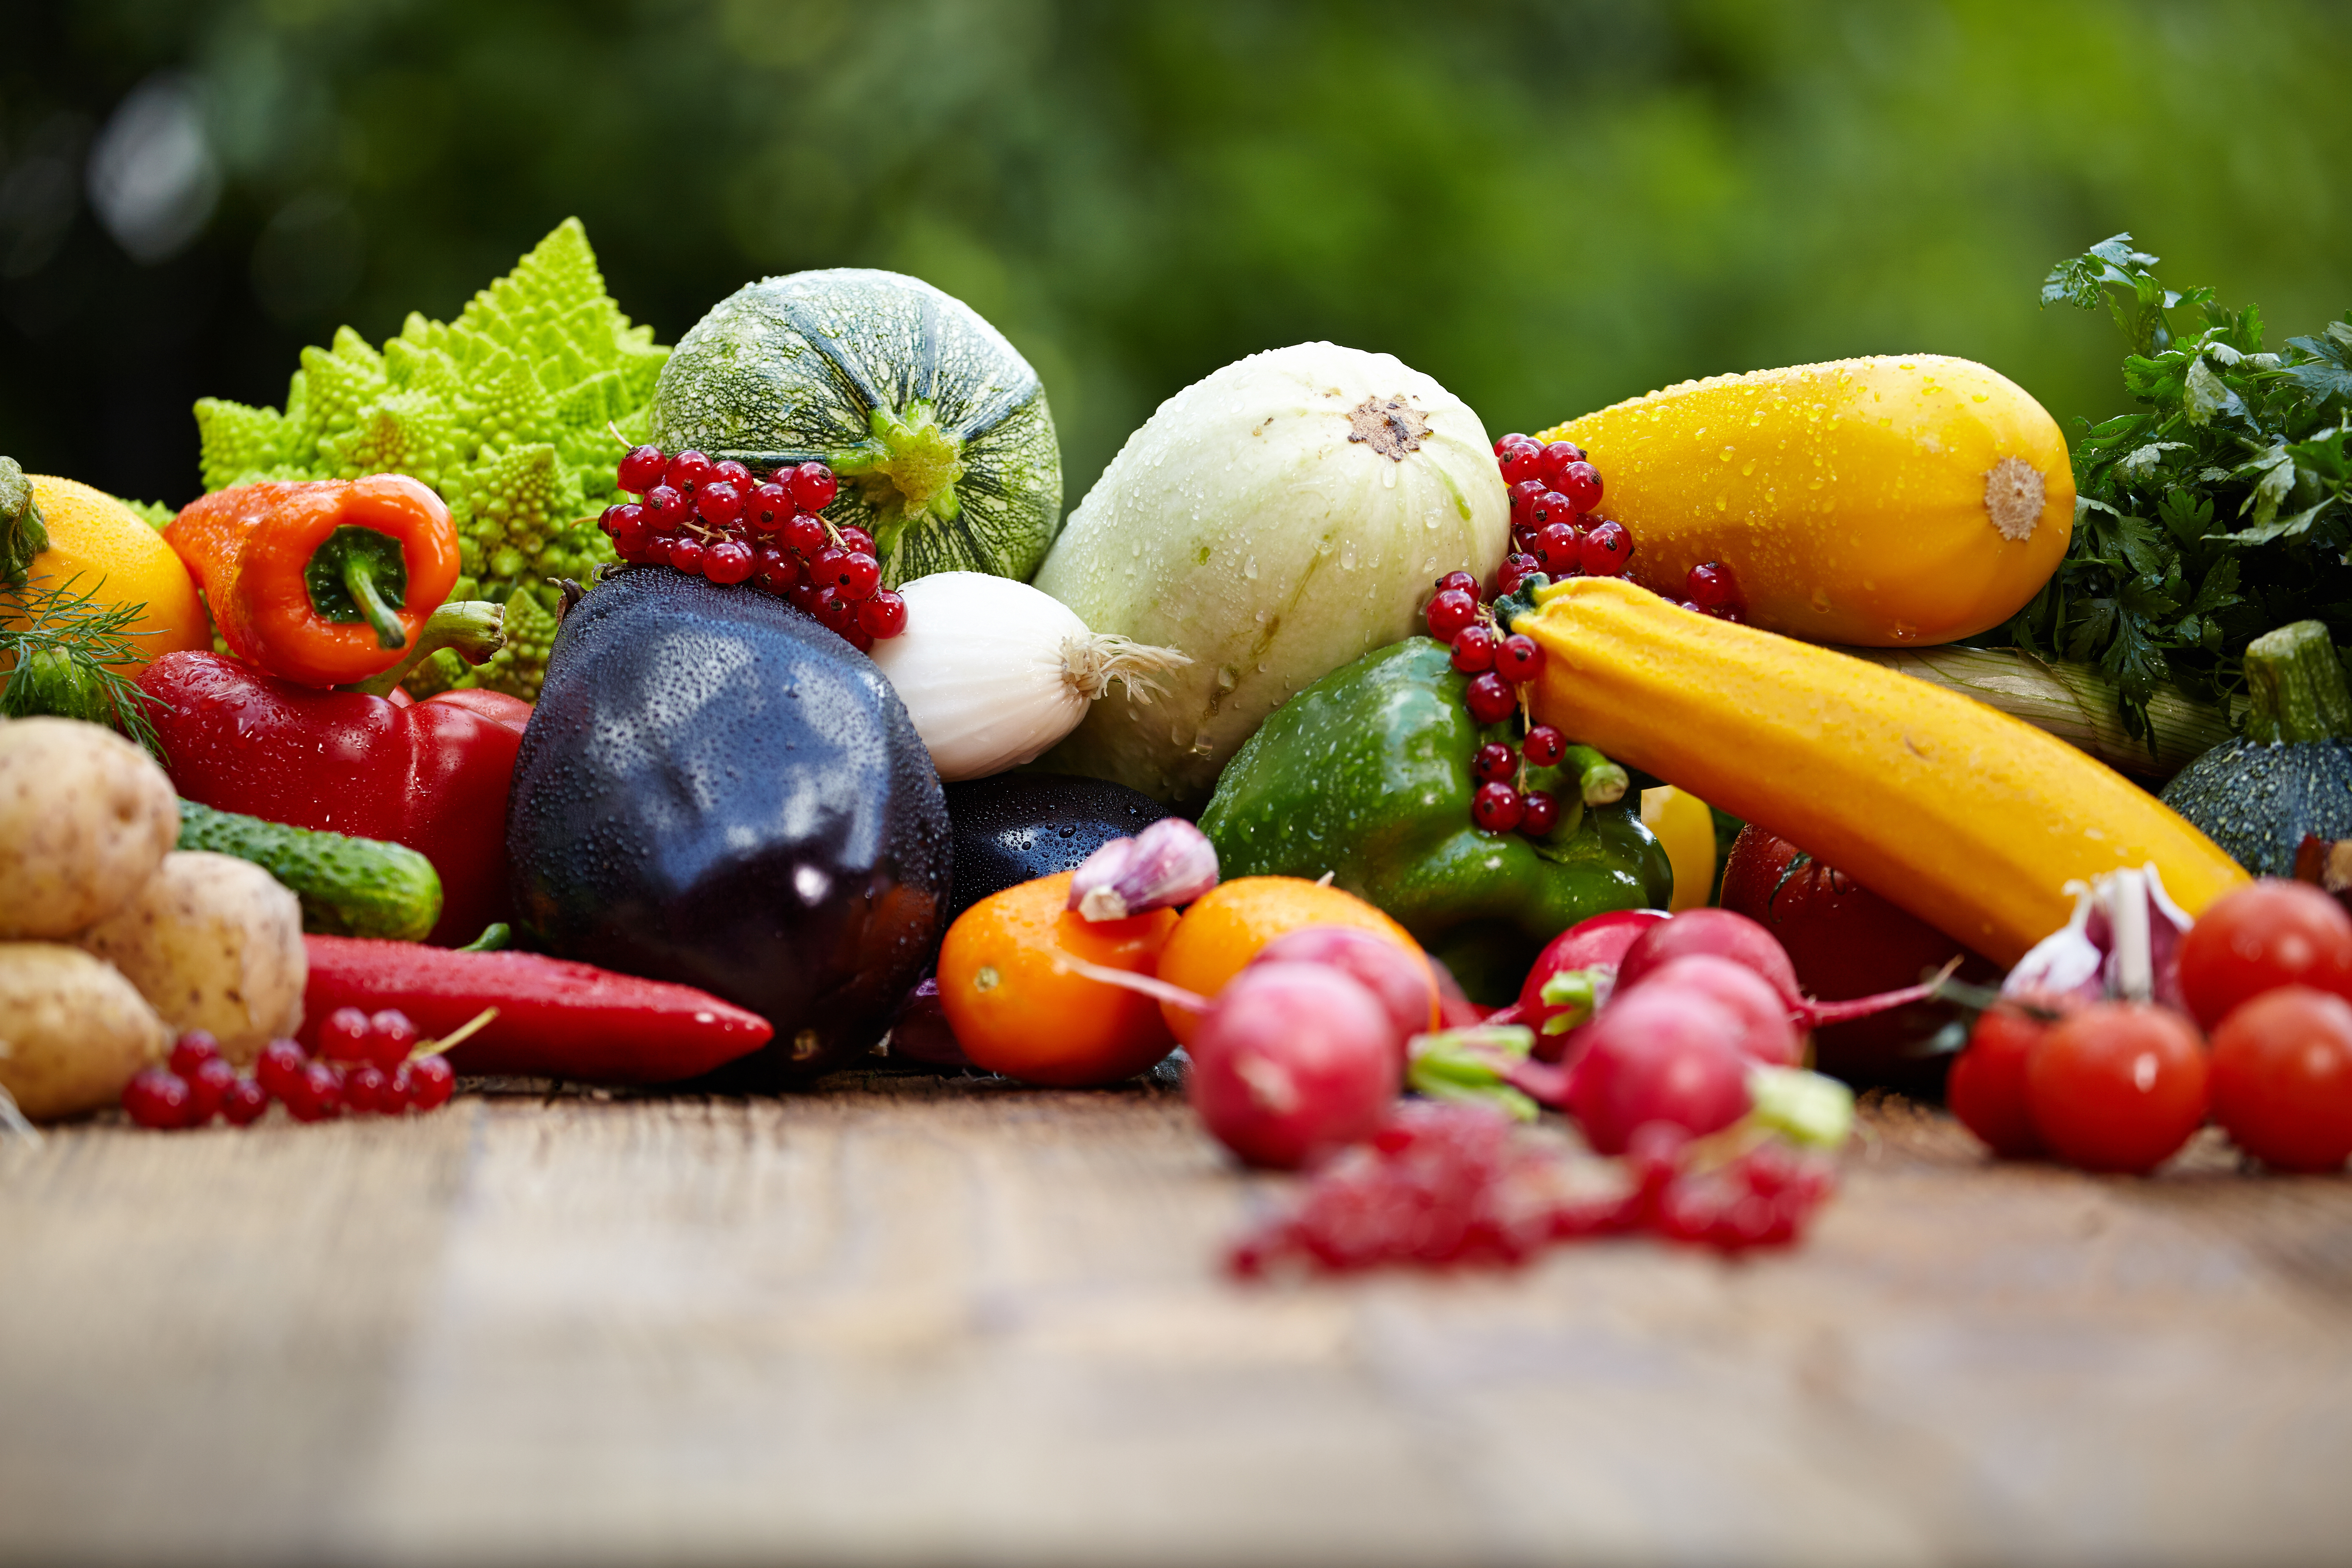 fruits & vegetables, fruits, food